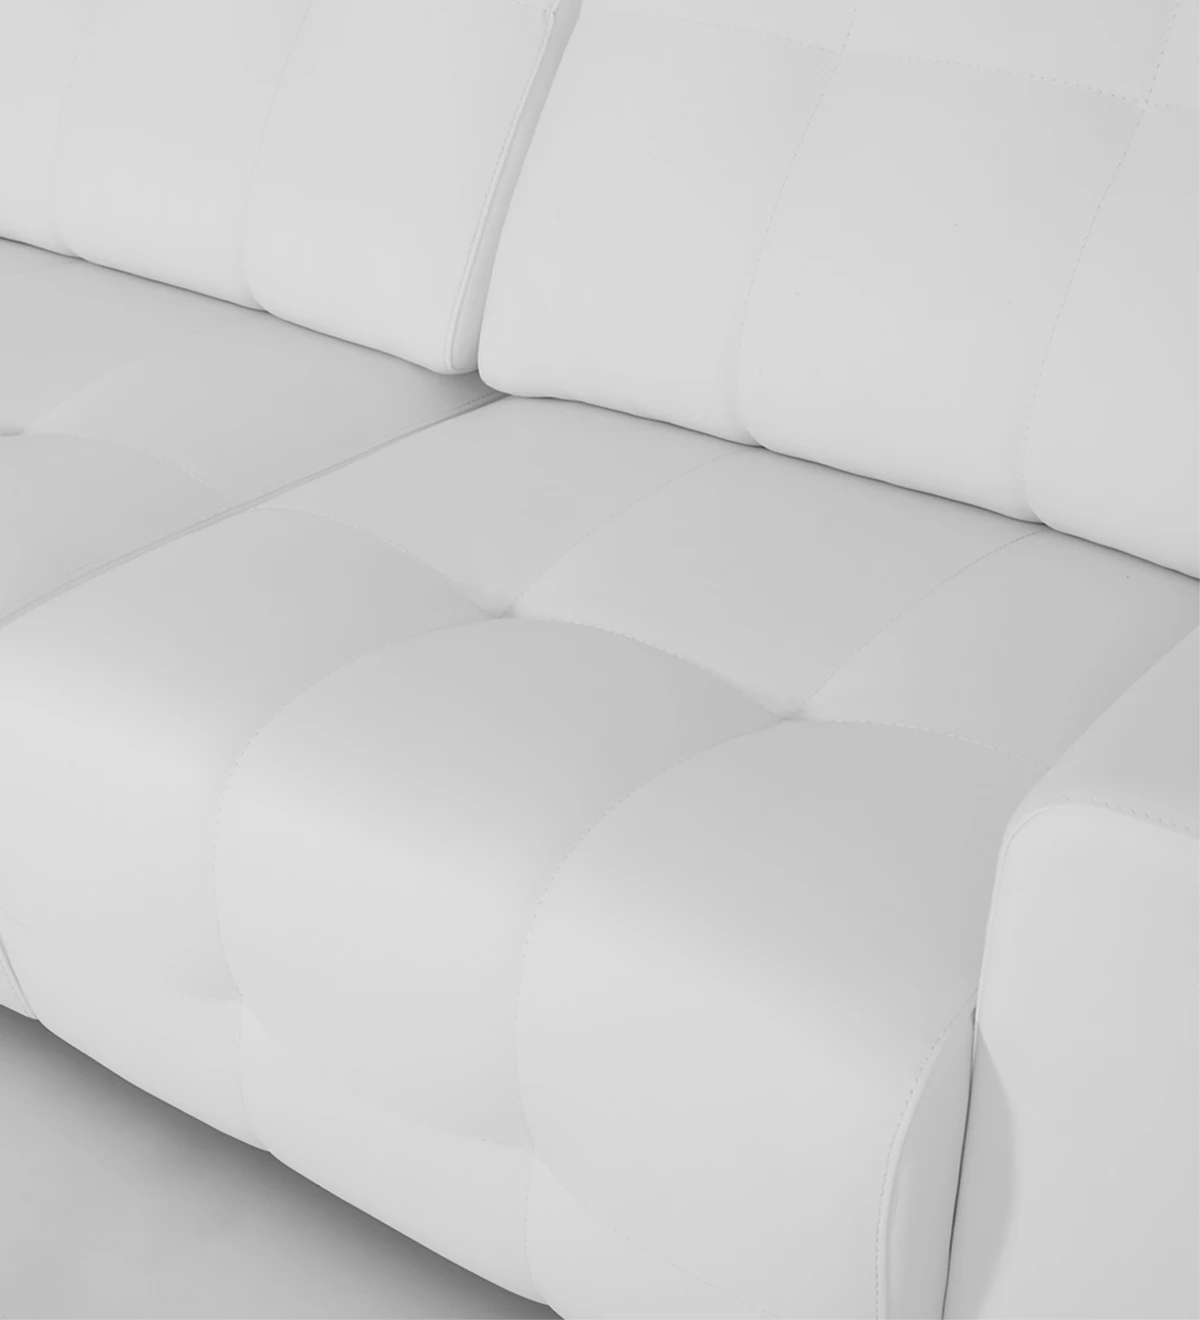 Sofá de 2 lugares estofado em ecopele branca, com pés em cromado